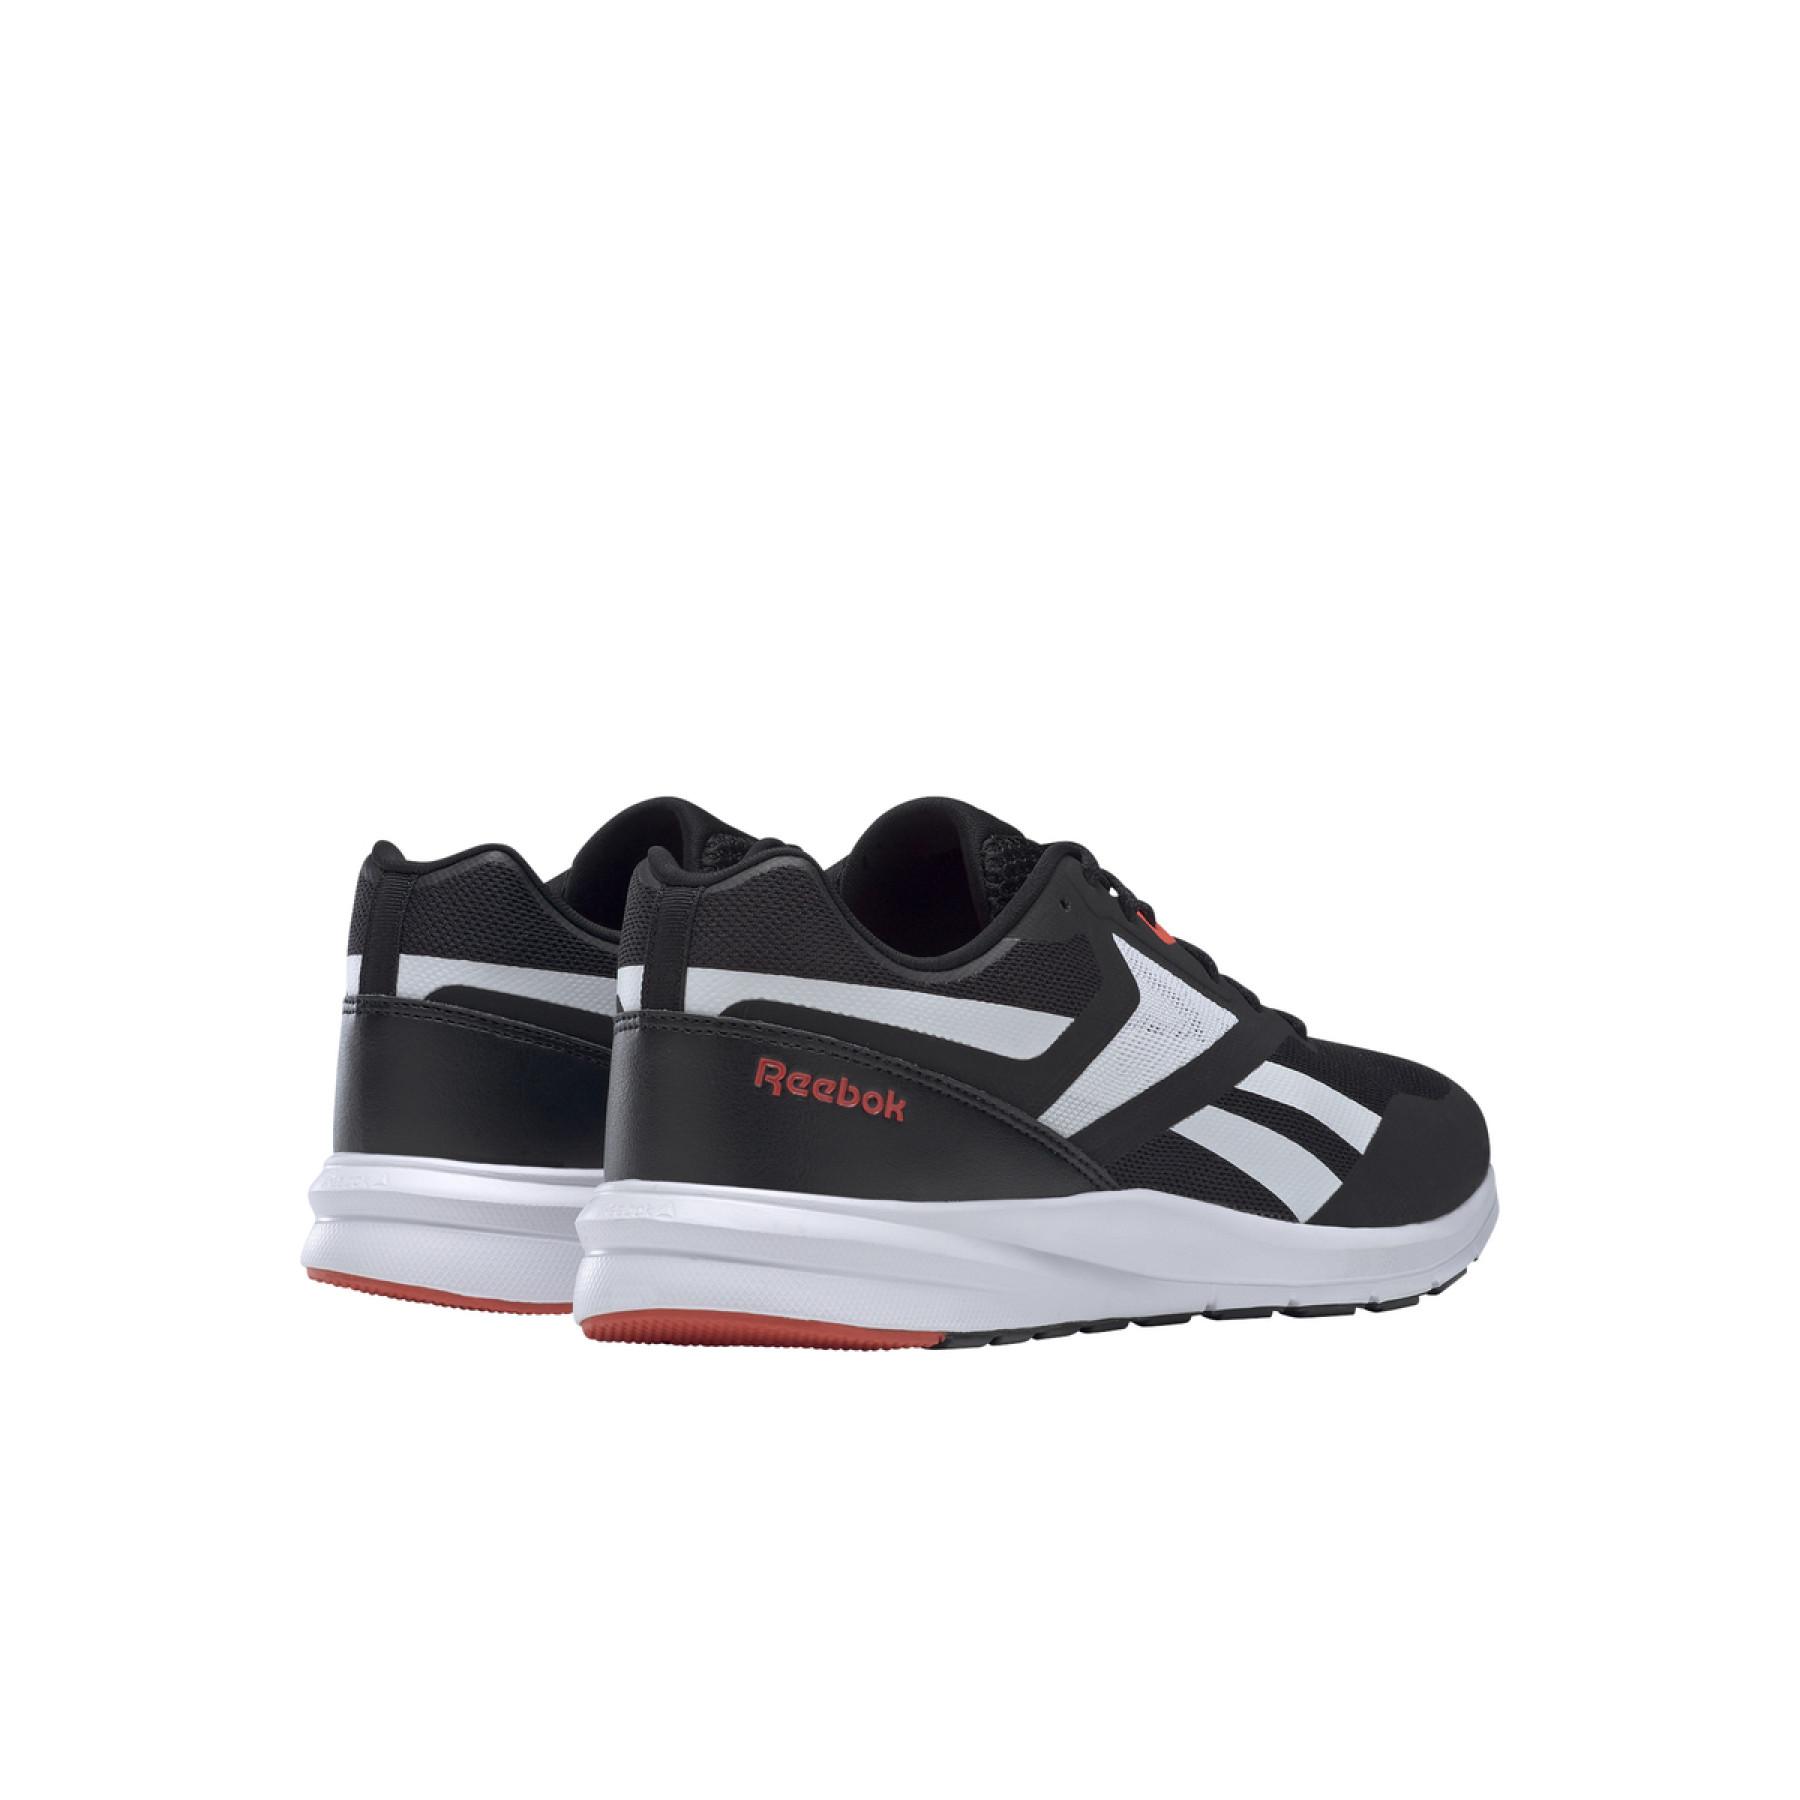 Schuhe Reebok Runner 4.0